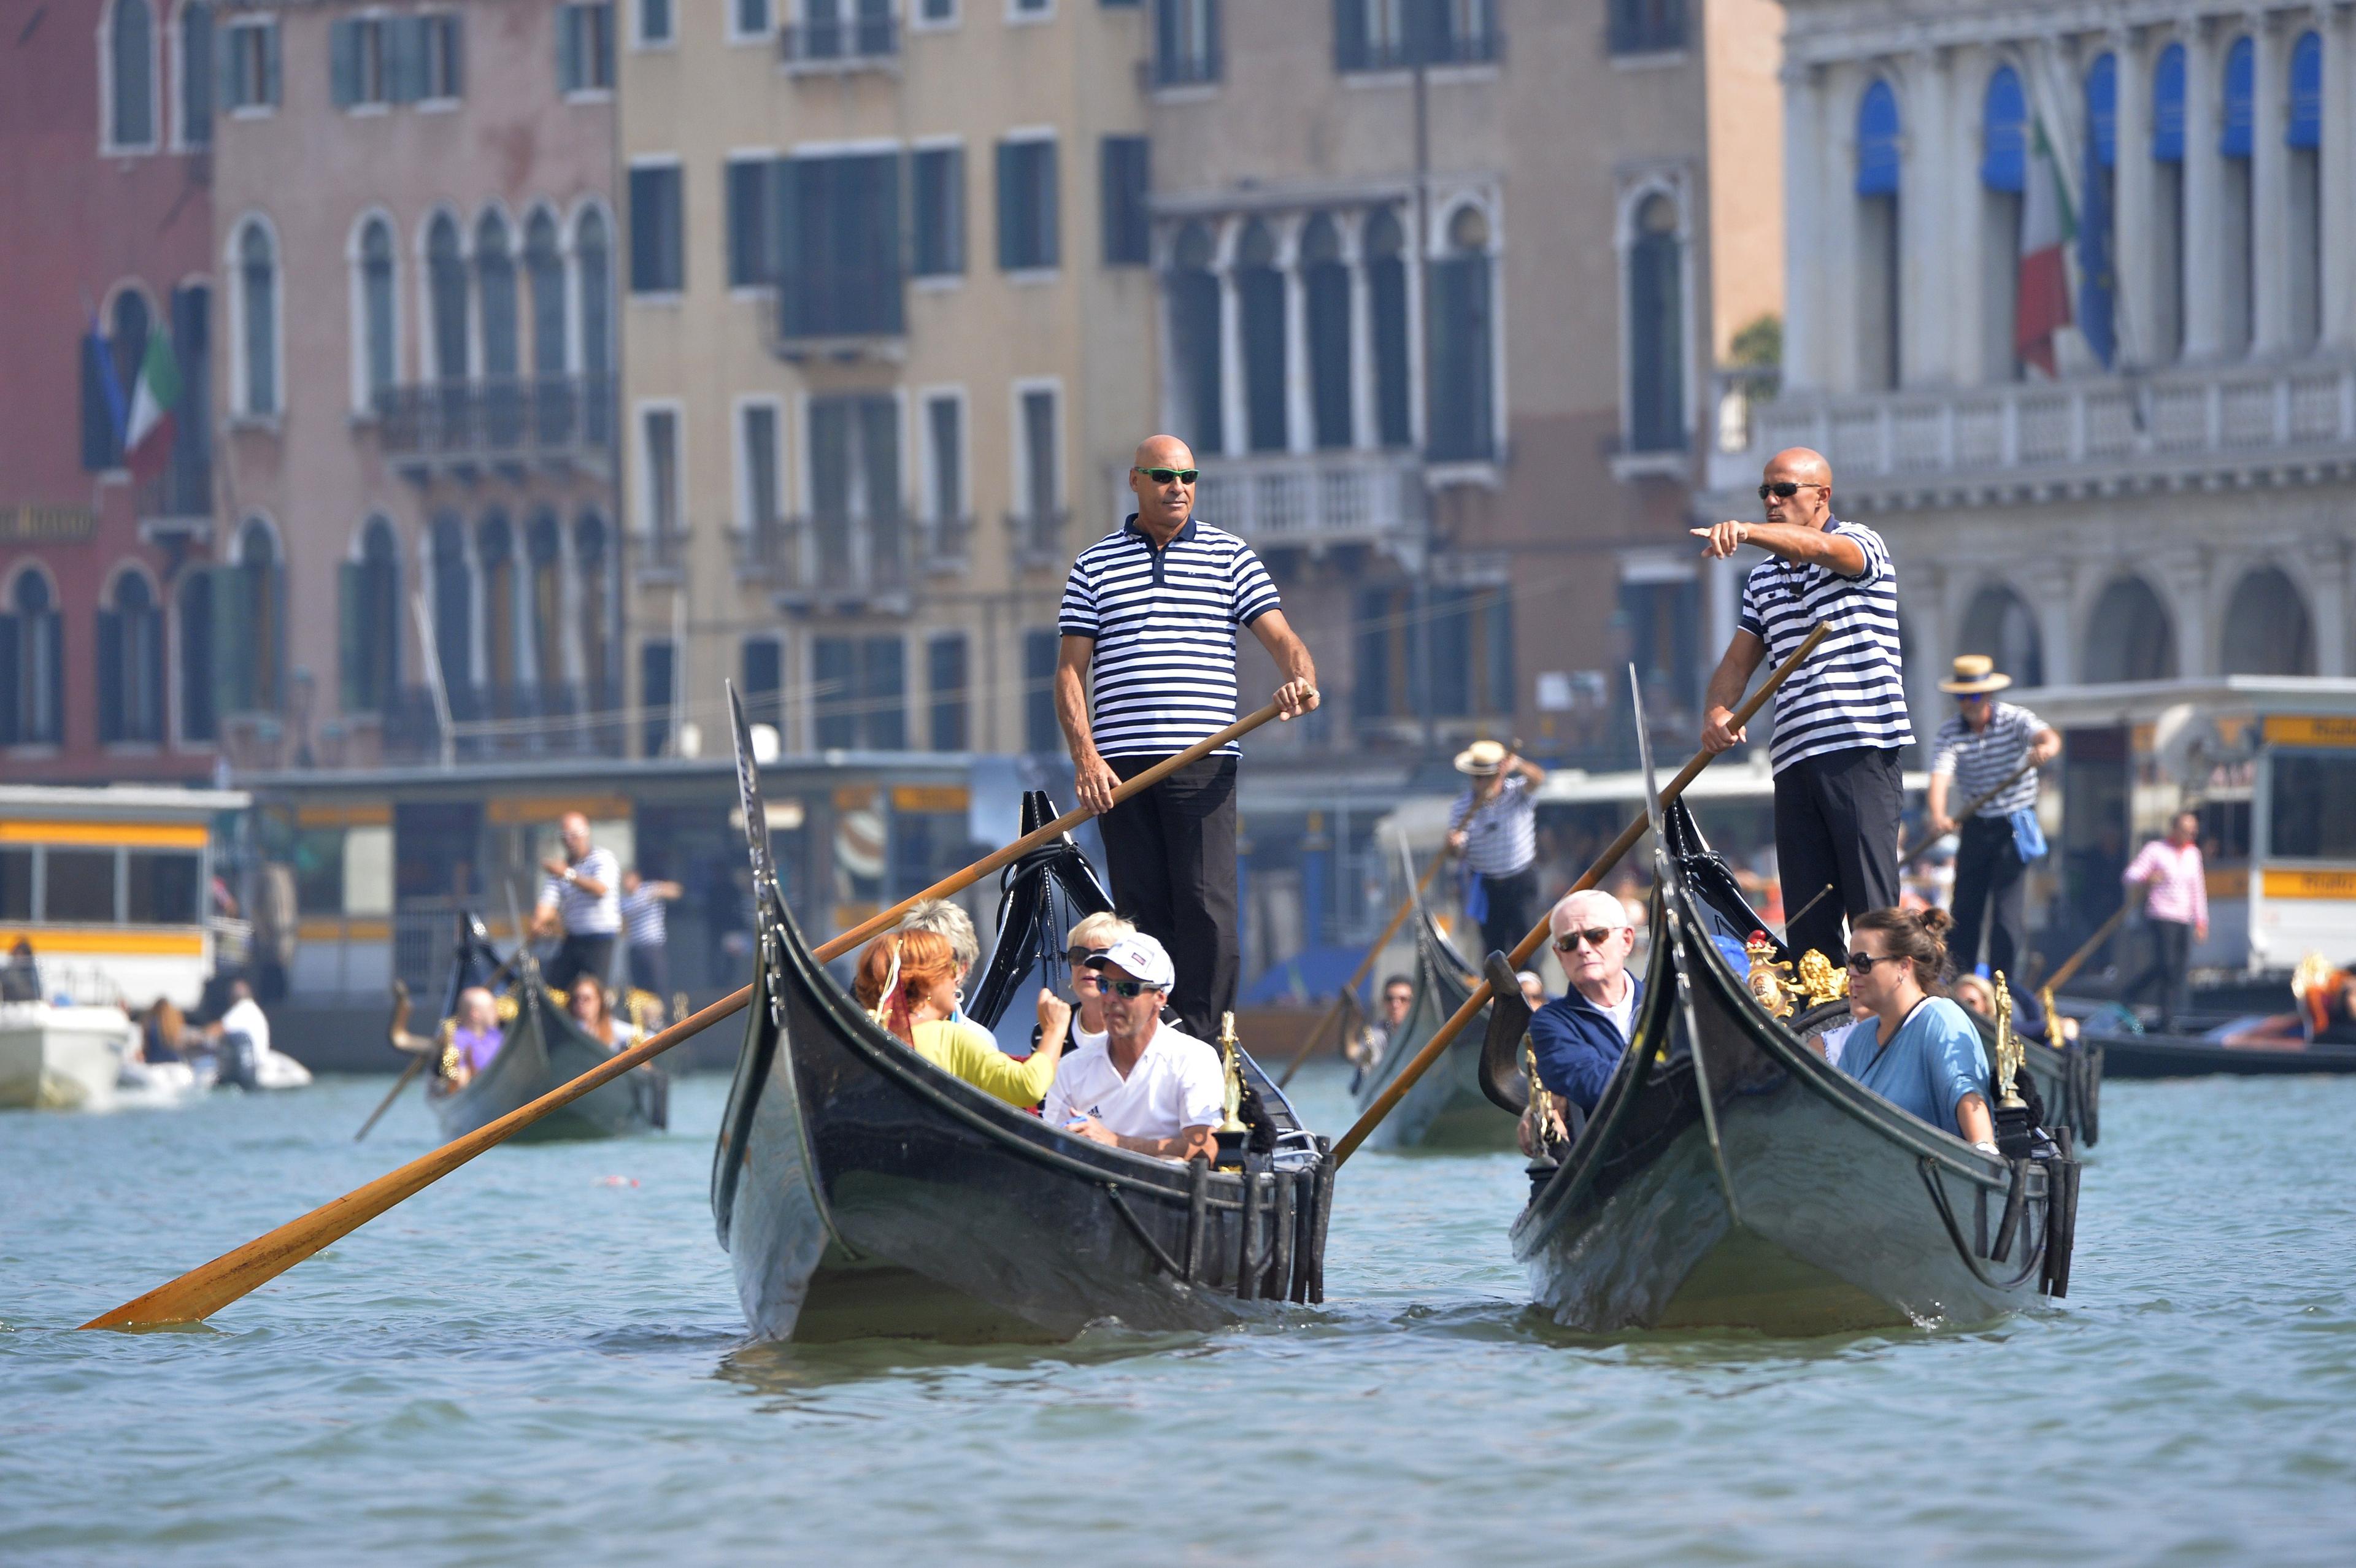 Fler och fler reser till Europa på semester och en tur i en gondol i Venedig kan bli ett semesterminne för många. (Foto: Andreas Solaro/AFP/Getty Image) 